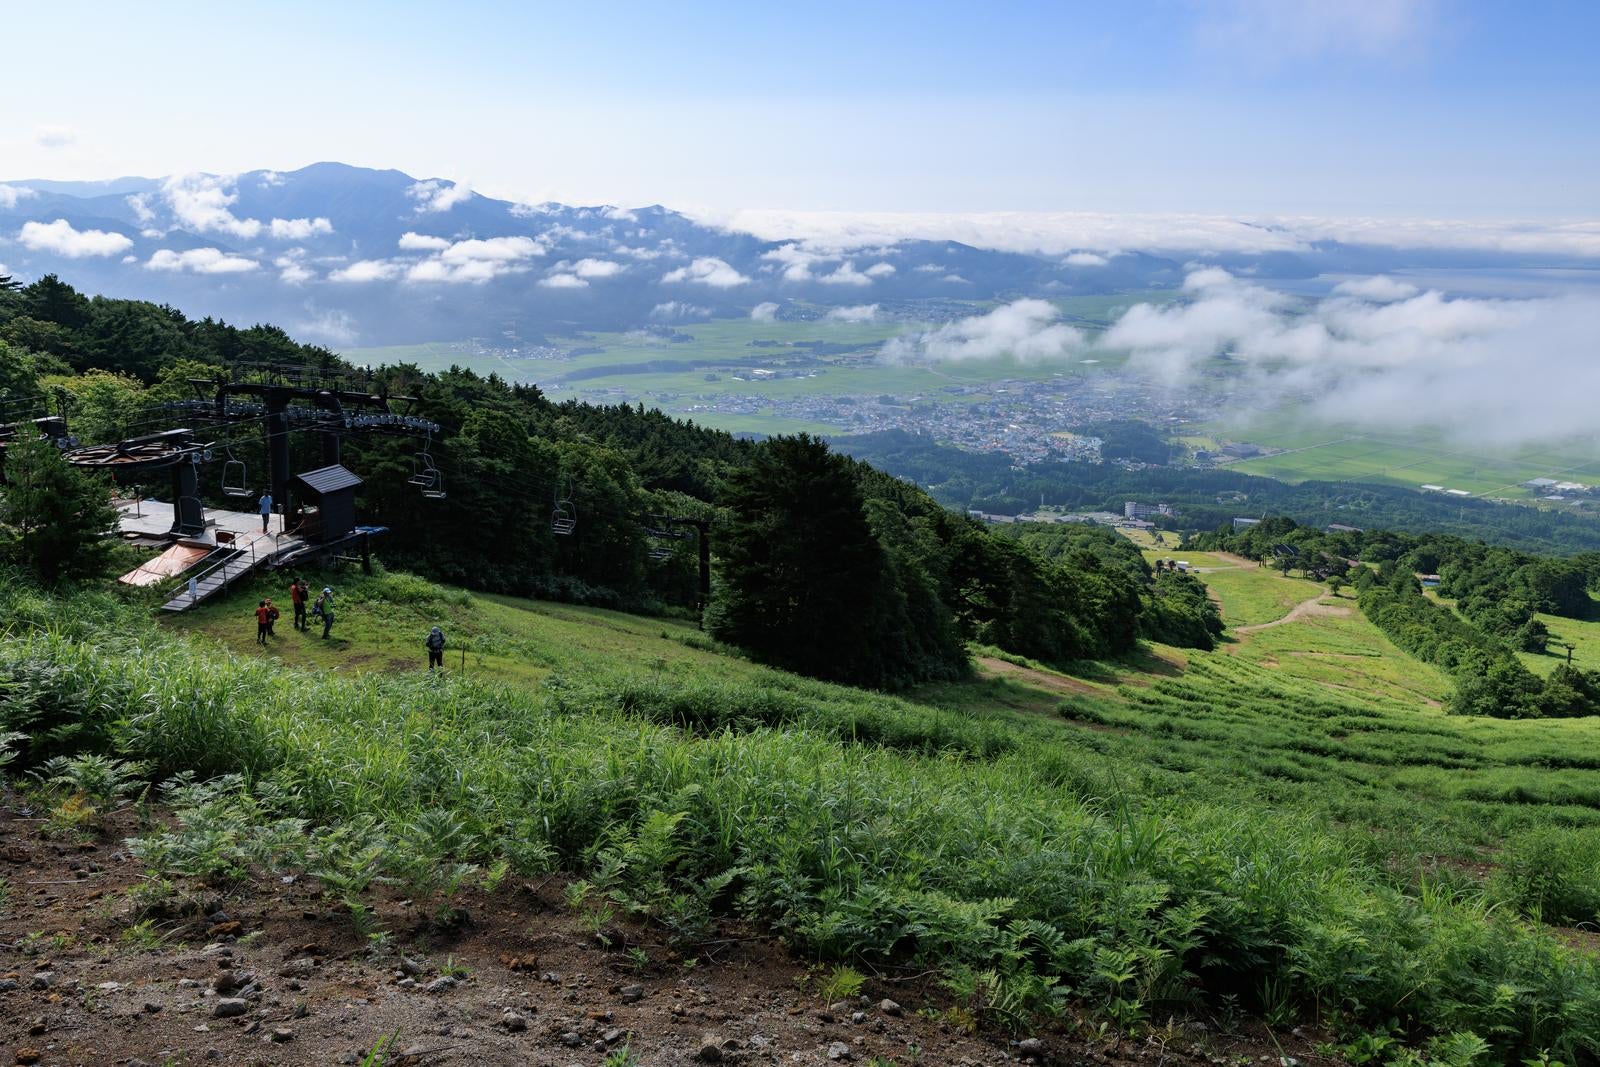 「眼下に広がる絶景と磐梯山猪苗代登山口からのリフト」の写真